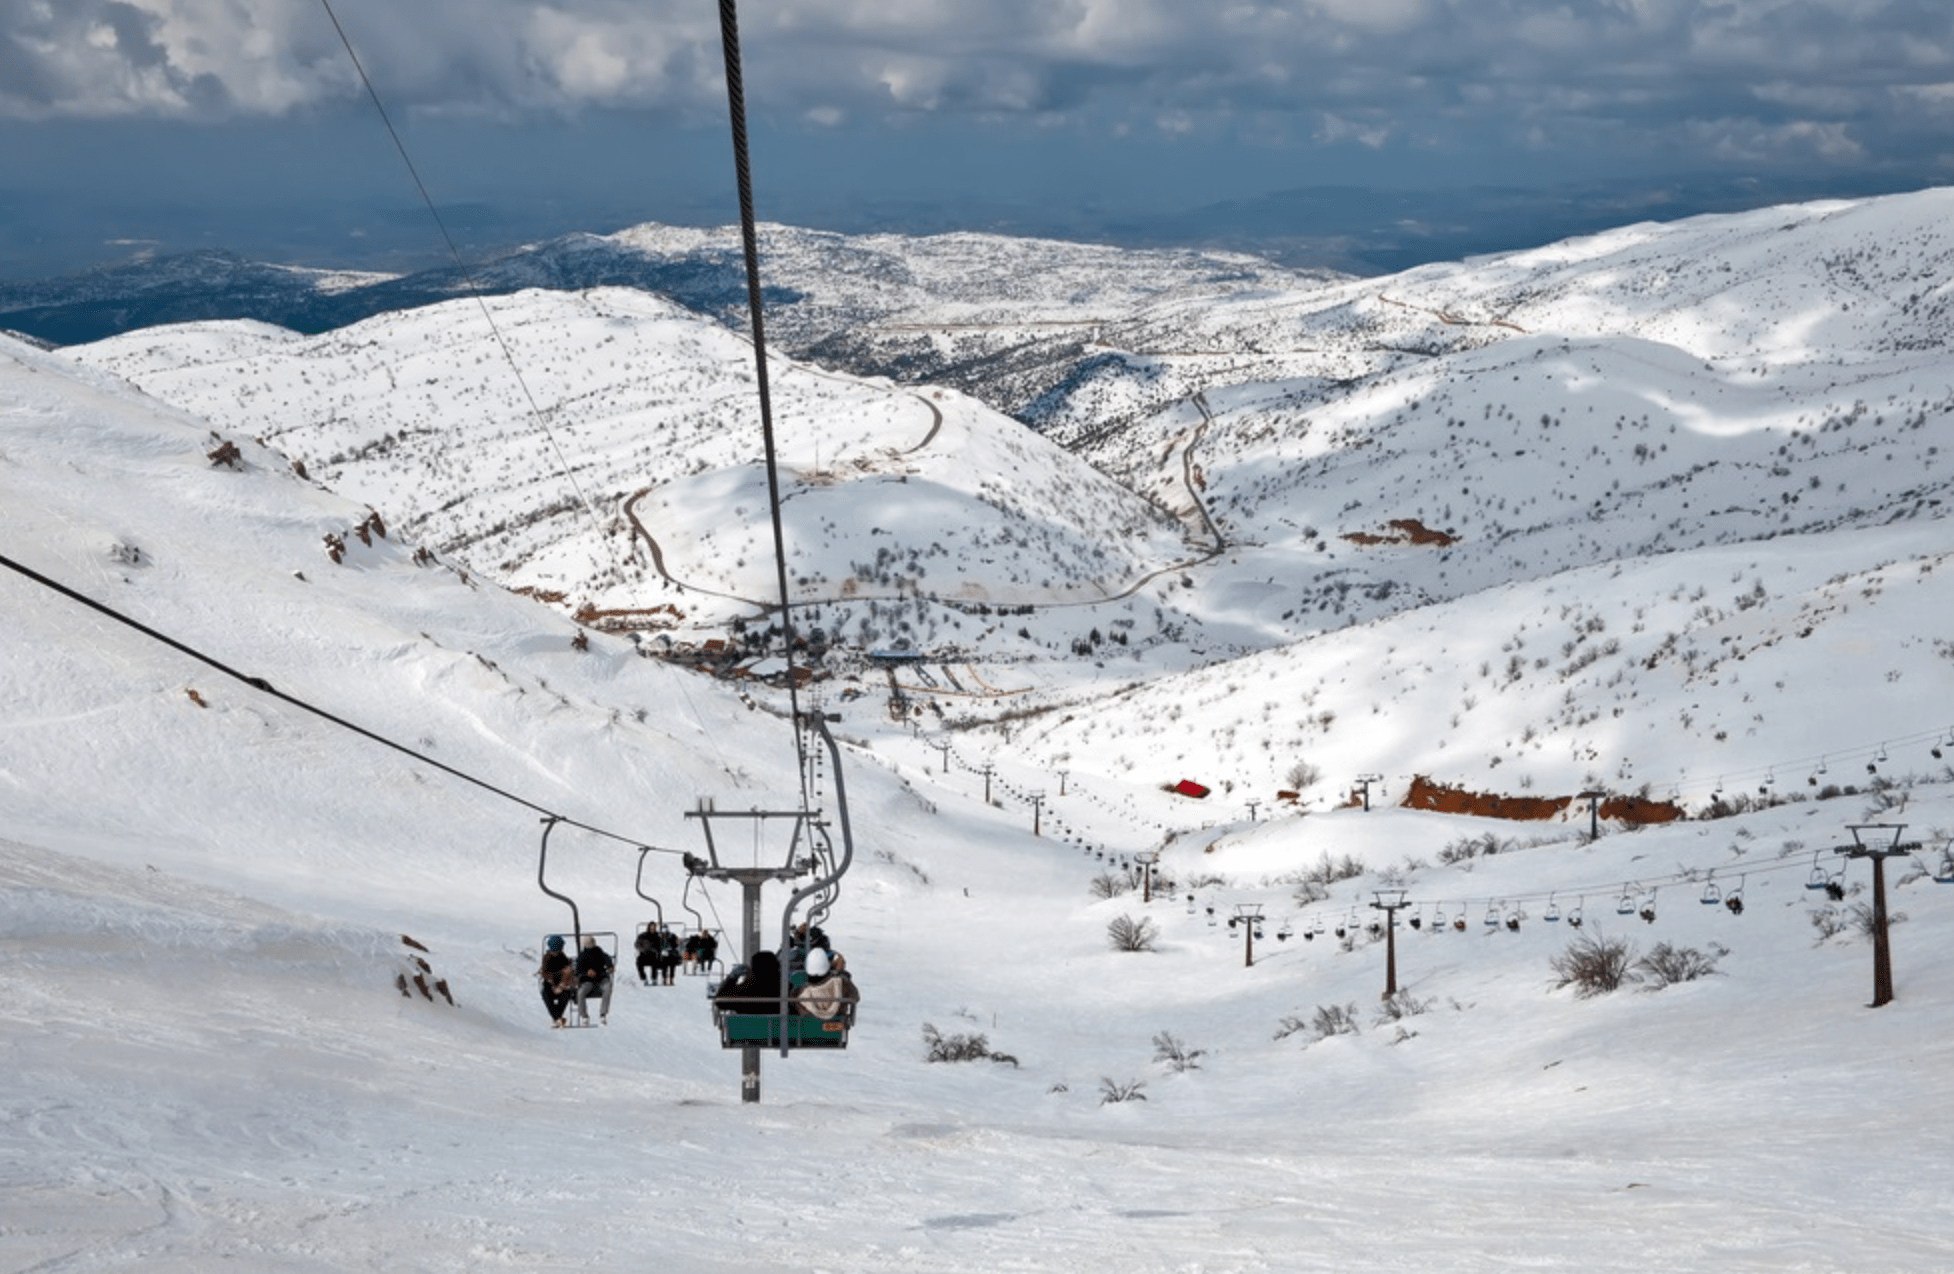 Remote Ski Area Israel